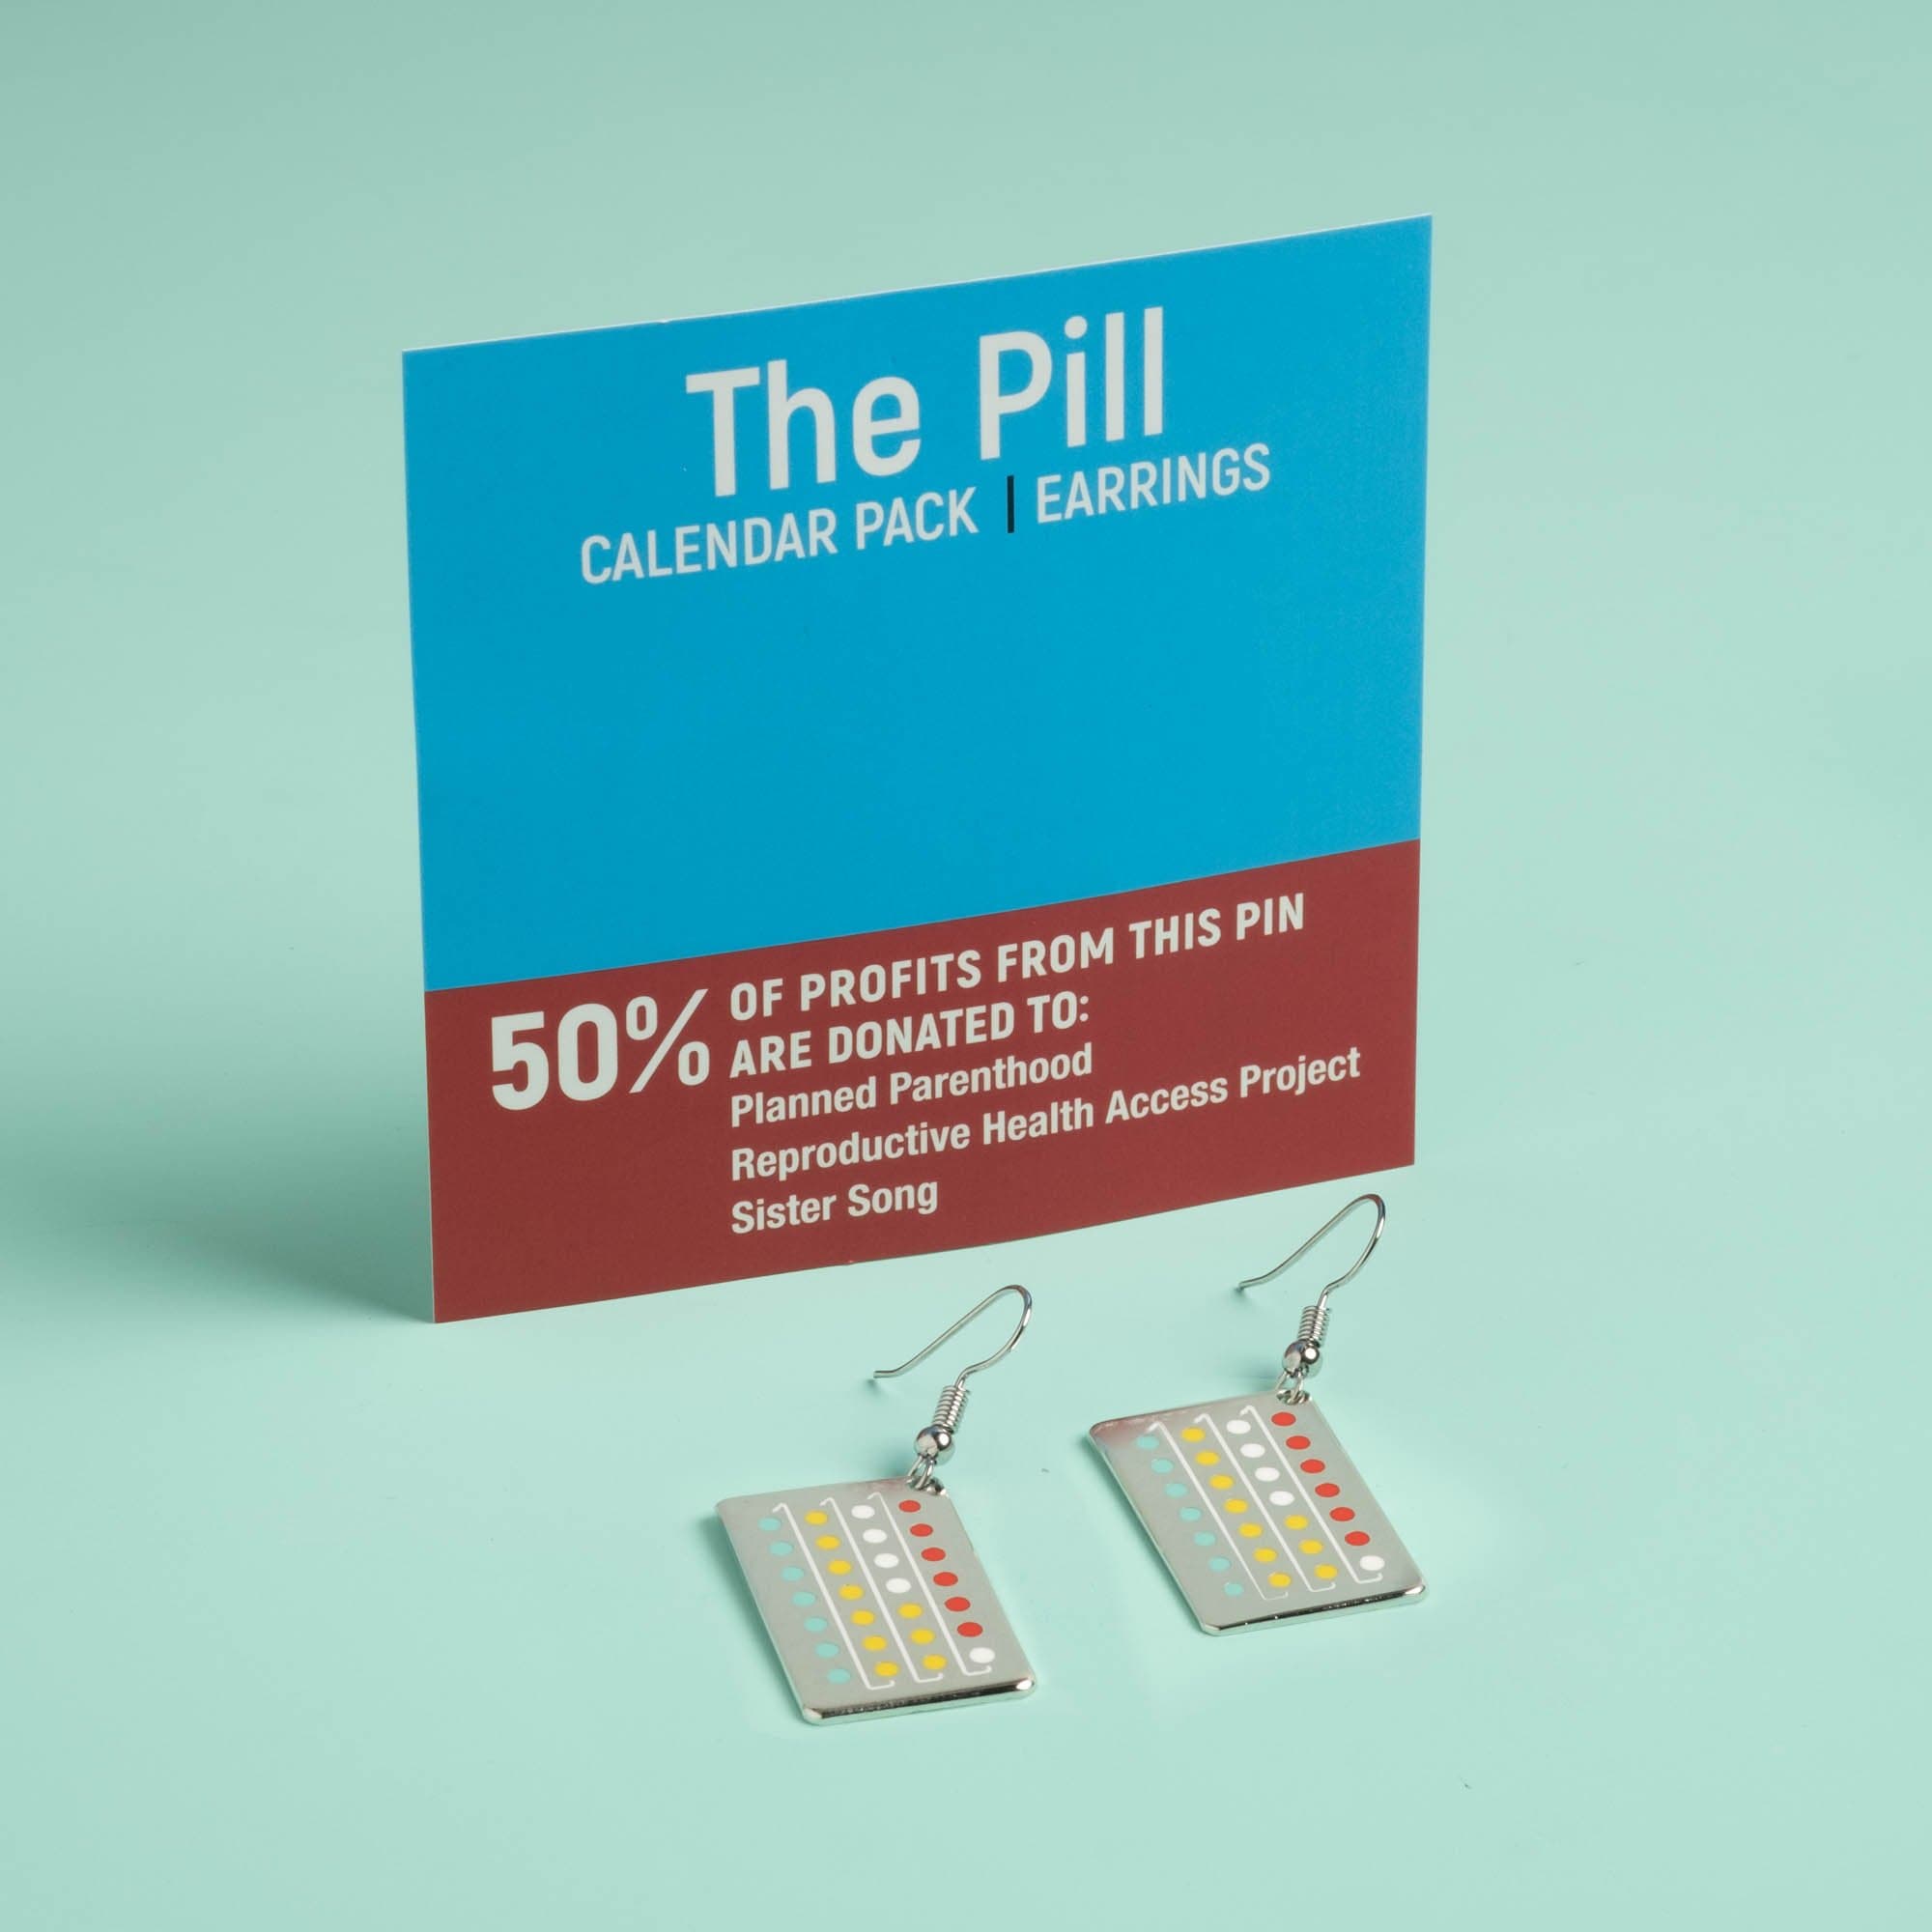 The Pill Earrings - Calendar Pack